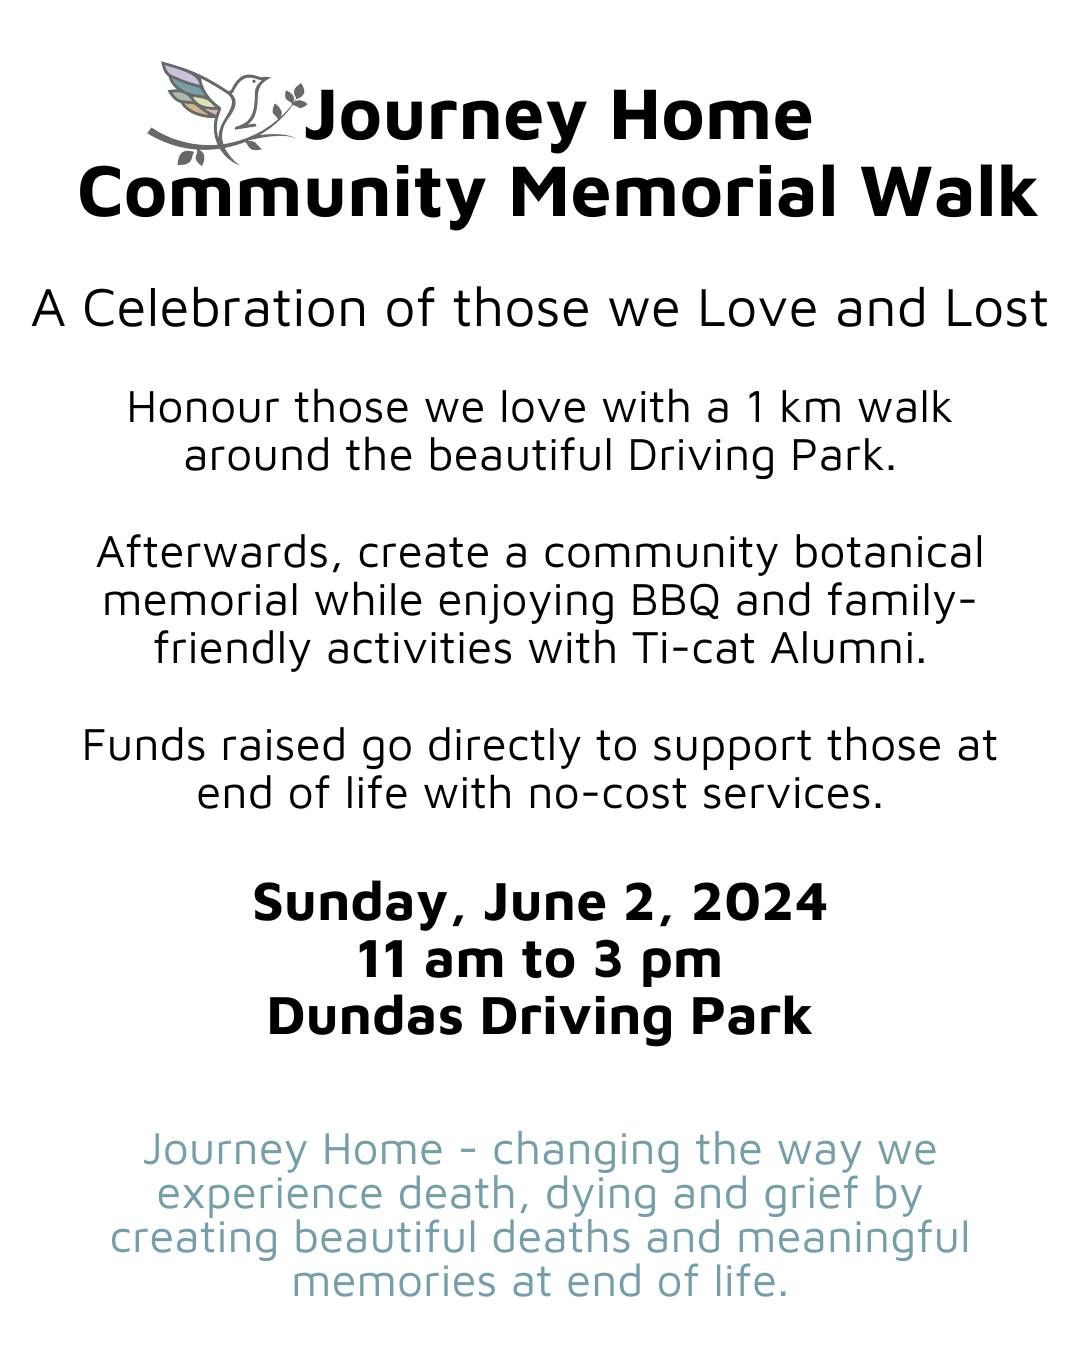 Community Memorial Walk